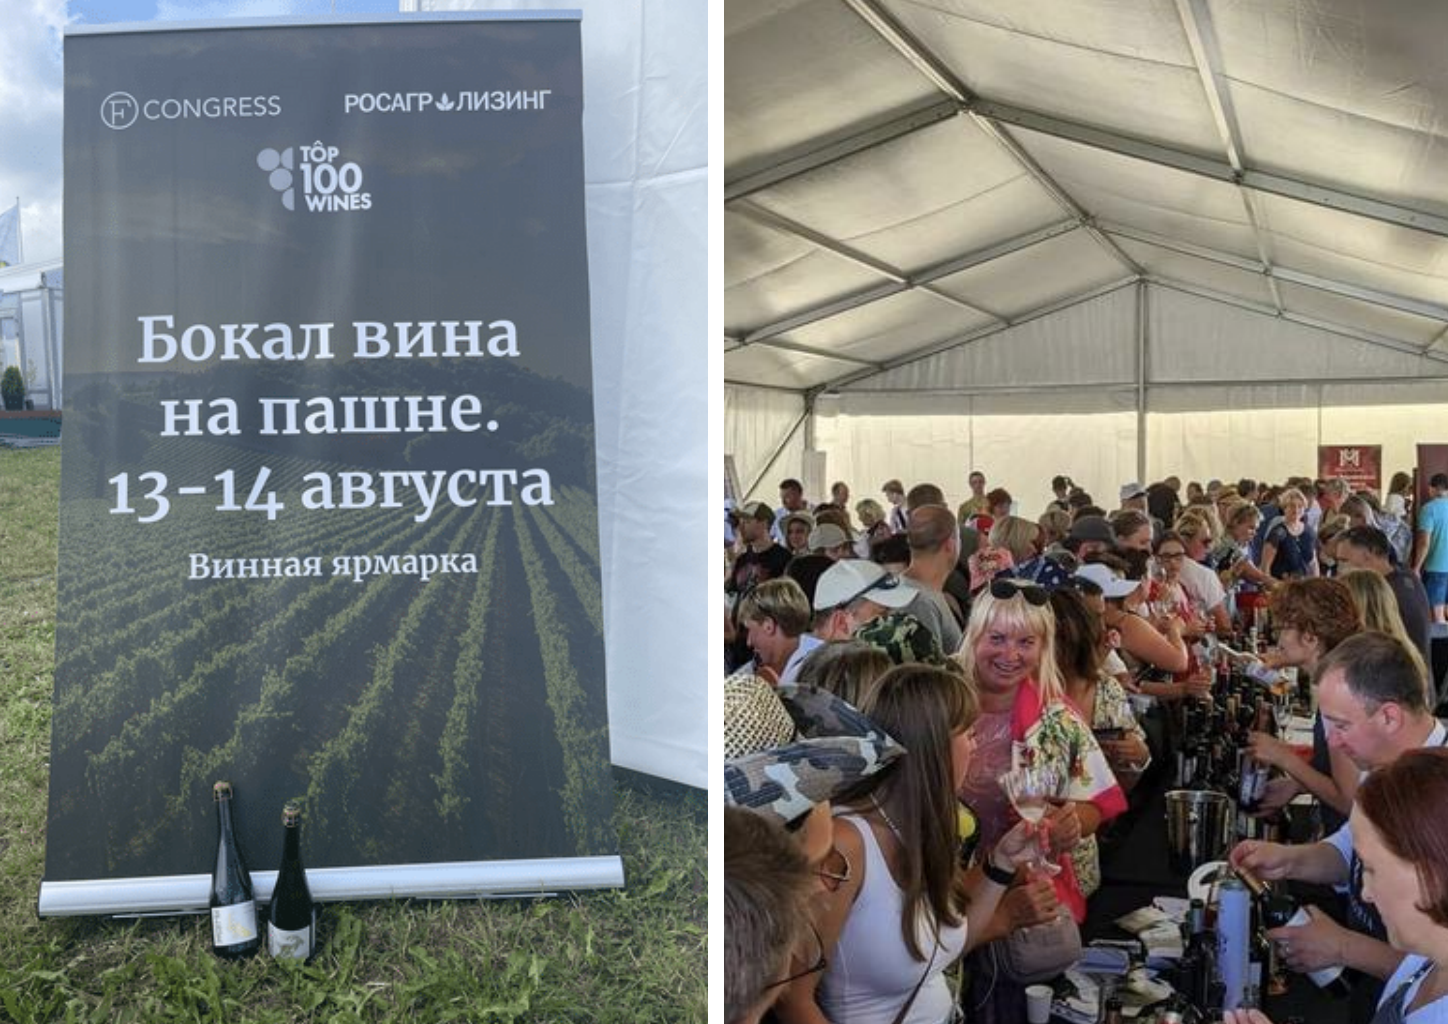 Участие Дербент Вино в винной ярмарке "Бокал вина на пашне" в Ленинградской области